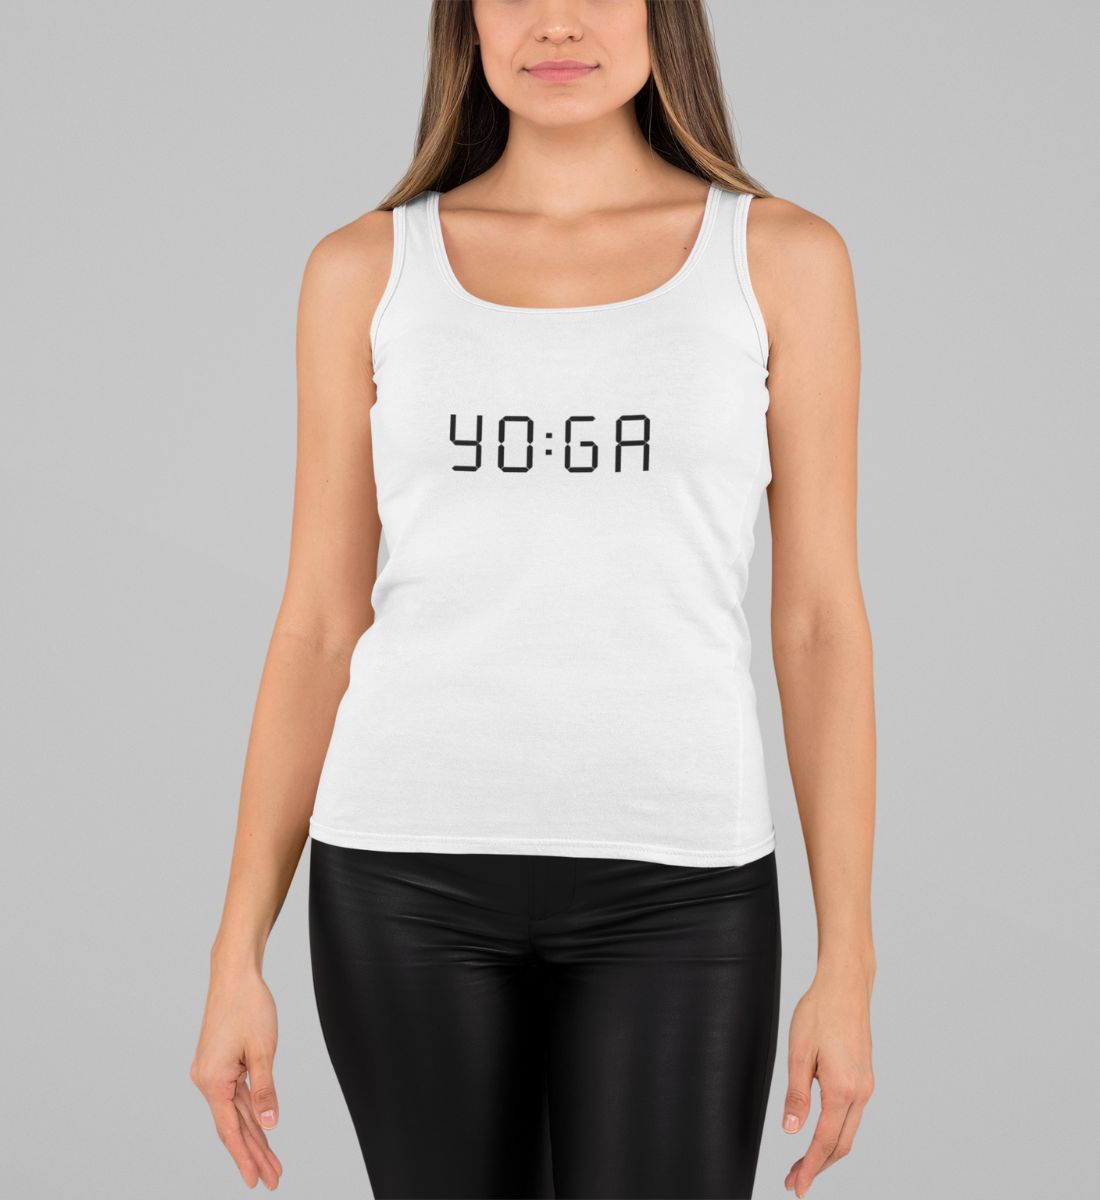 zeit für yoga l yoga top damen l bio top l yoga klamotten l ökologisch und umweltfreundliche produkte online shoppen